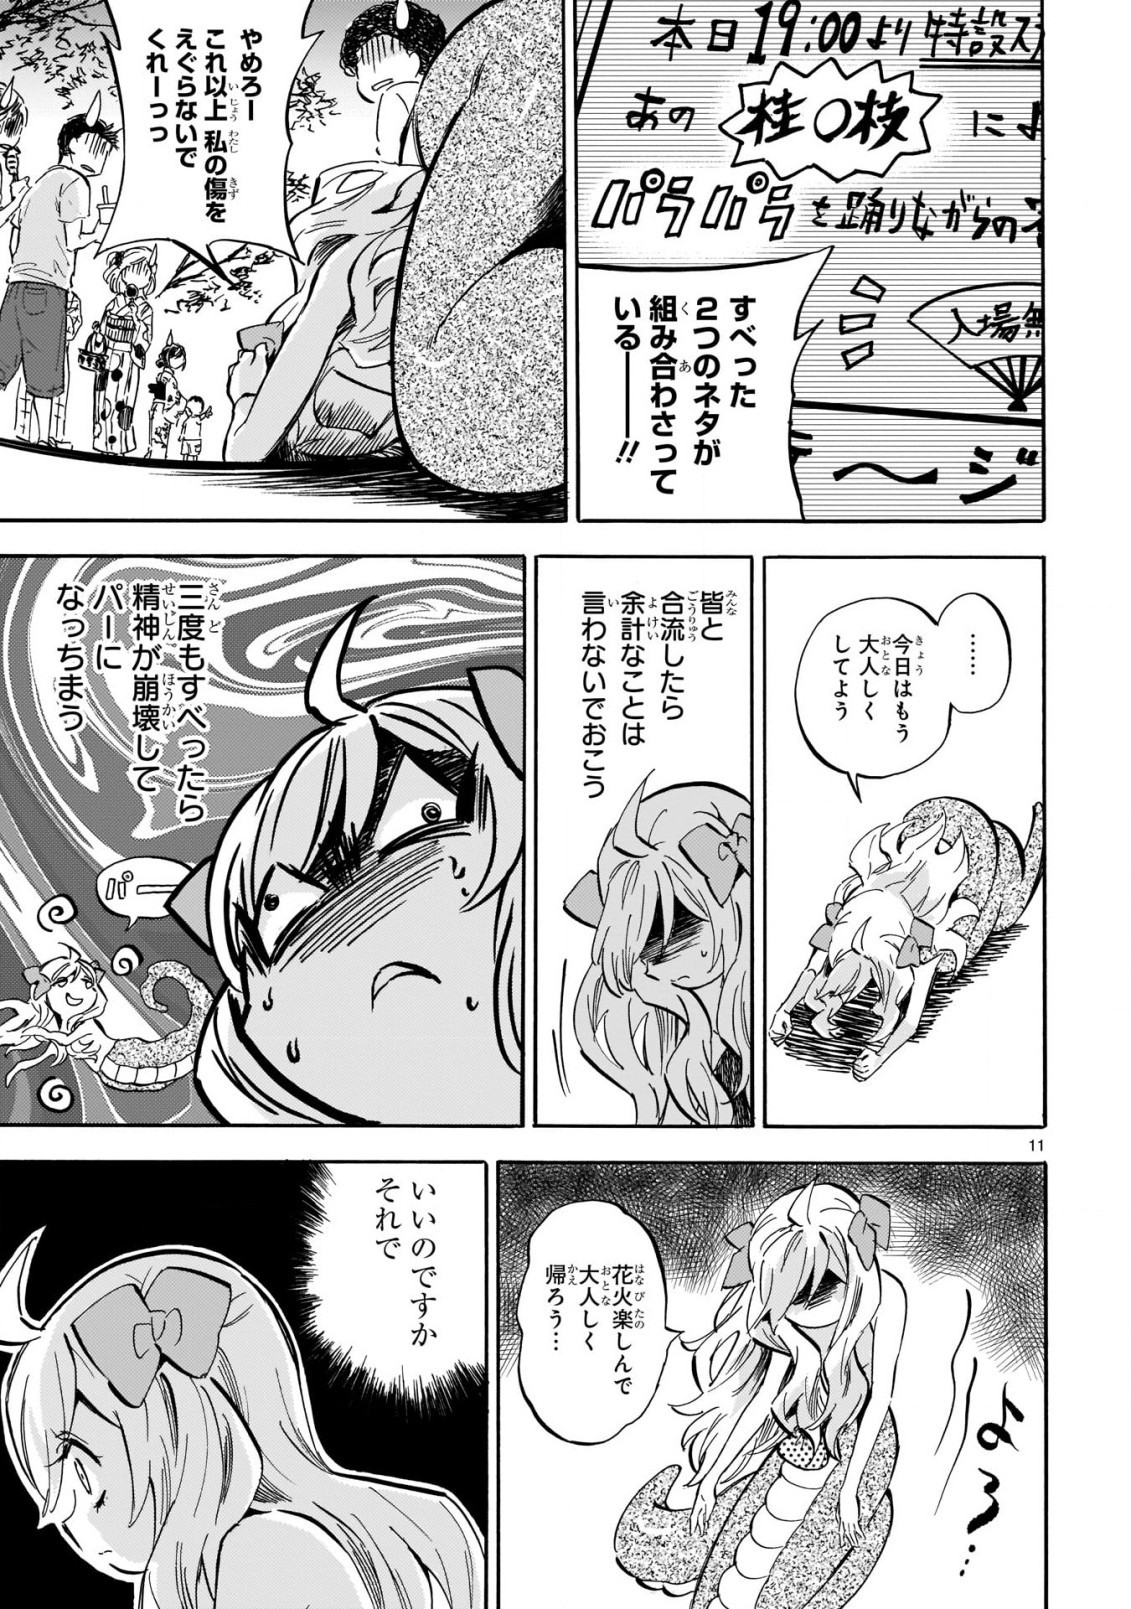 Jashin-chan Dropkick - Chapter 200 - Page 11